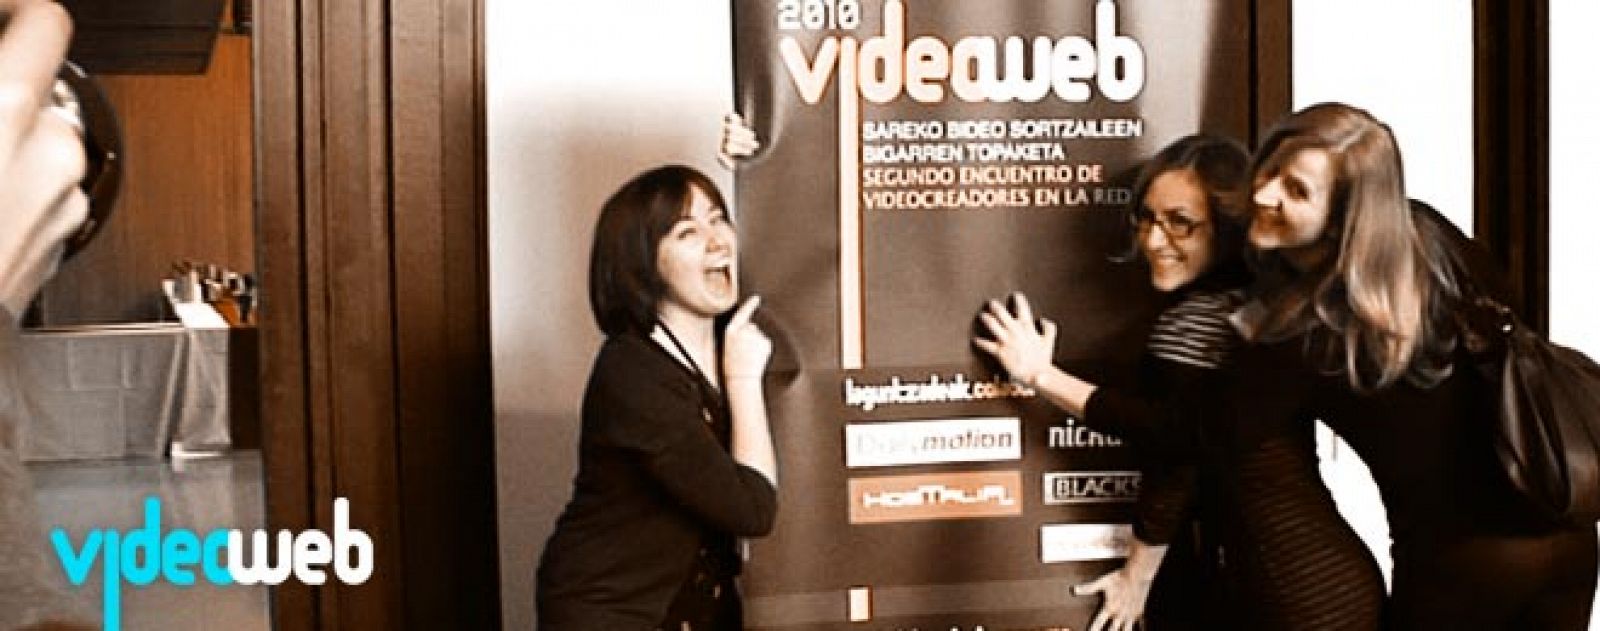 Imagen de algunas de las participantes en la segunda edición del encuentro Videoweb, que tuvo lugar en 2010. La tercera edición tendrá lugar en Bilbao el 19 de marzo de 2011.